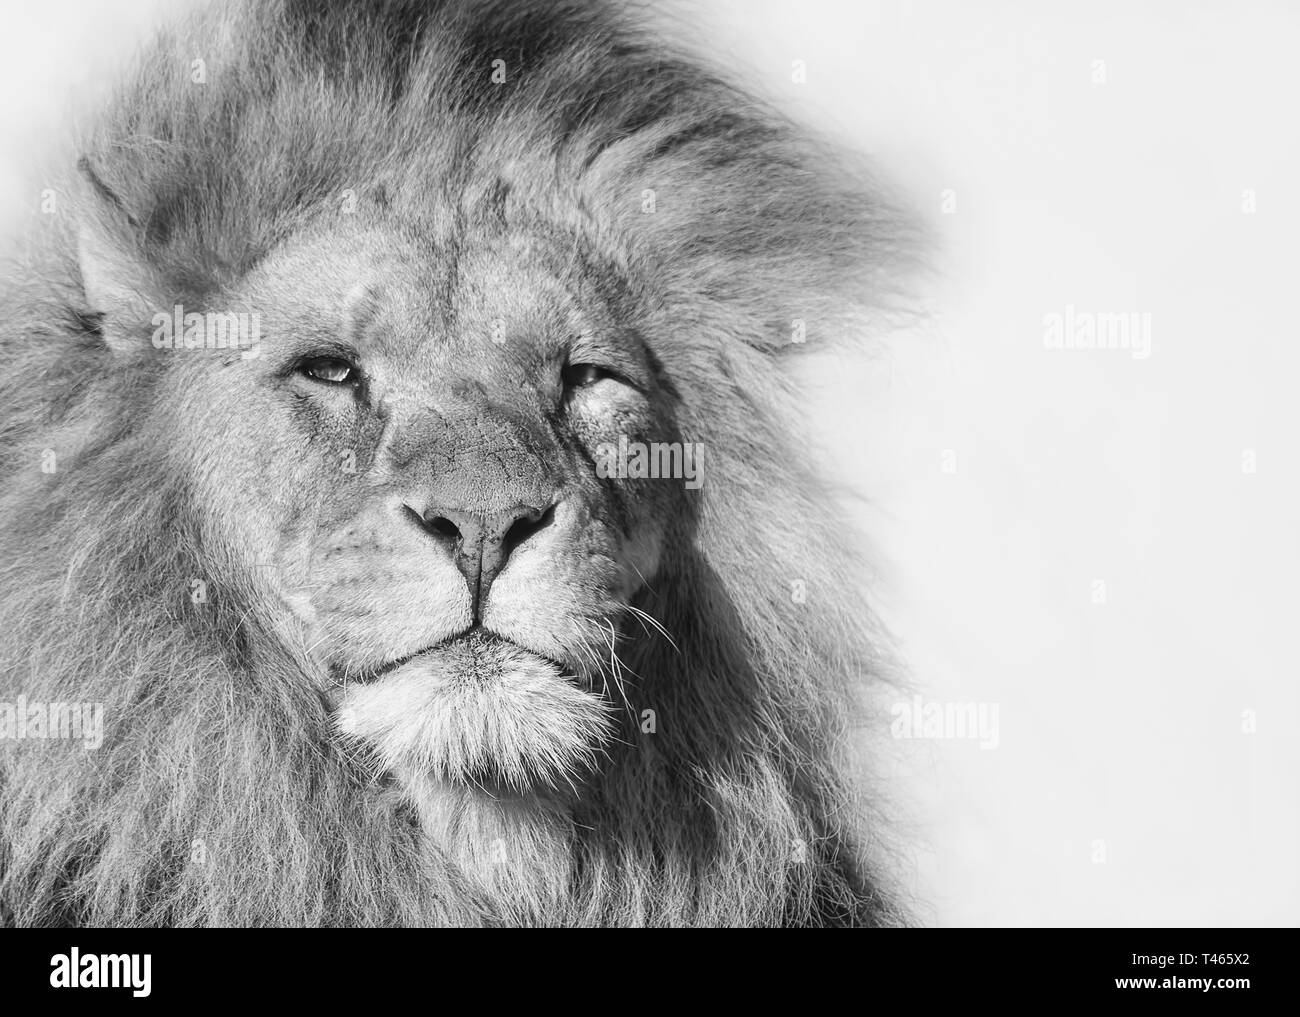 Closeup retrato en blanco y negro de un león africano macho Foto de stock